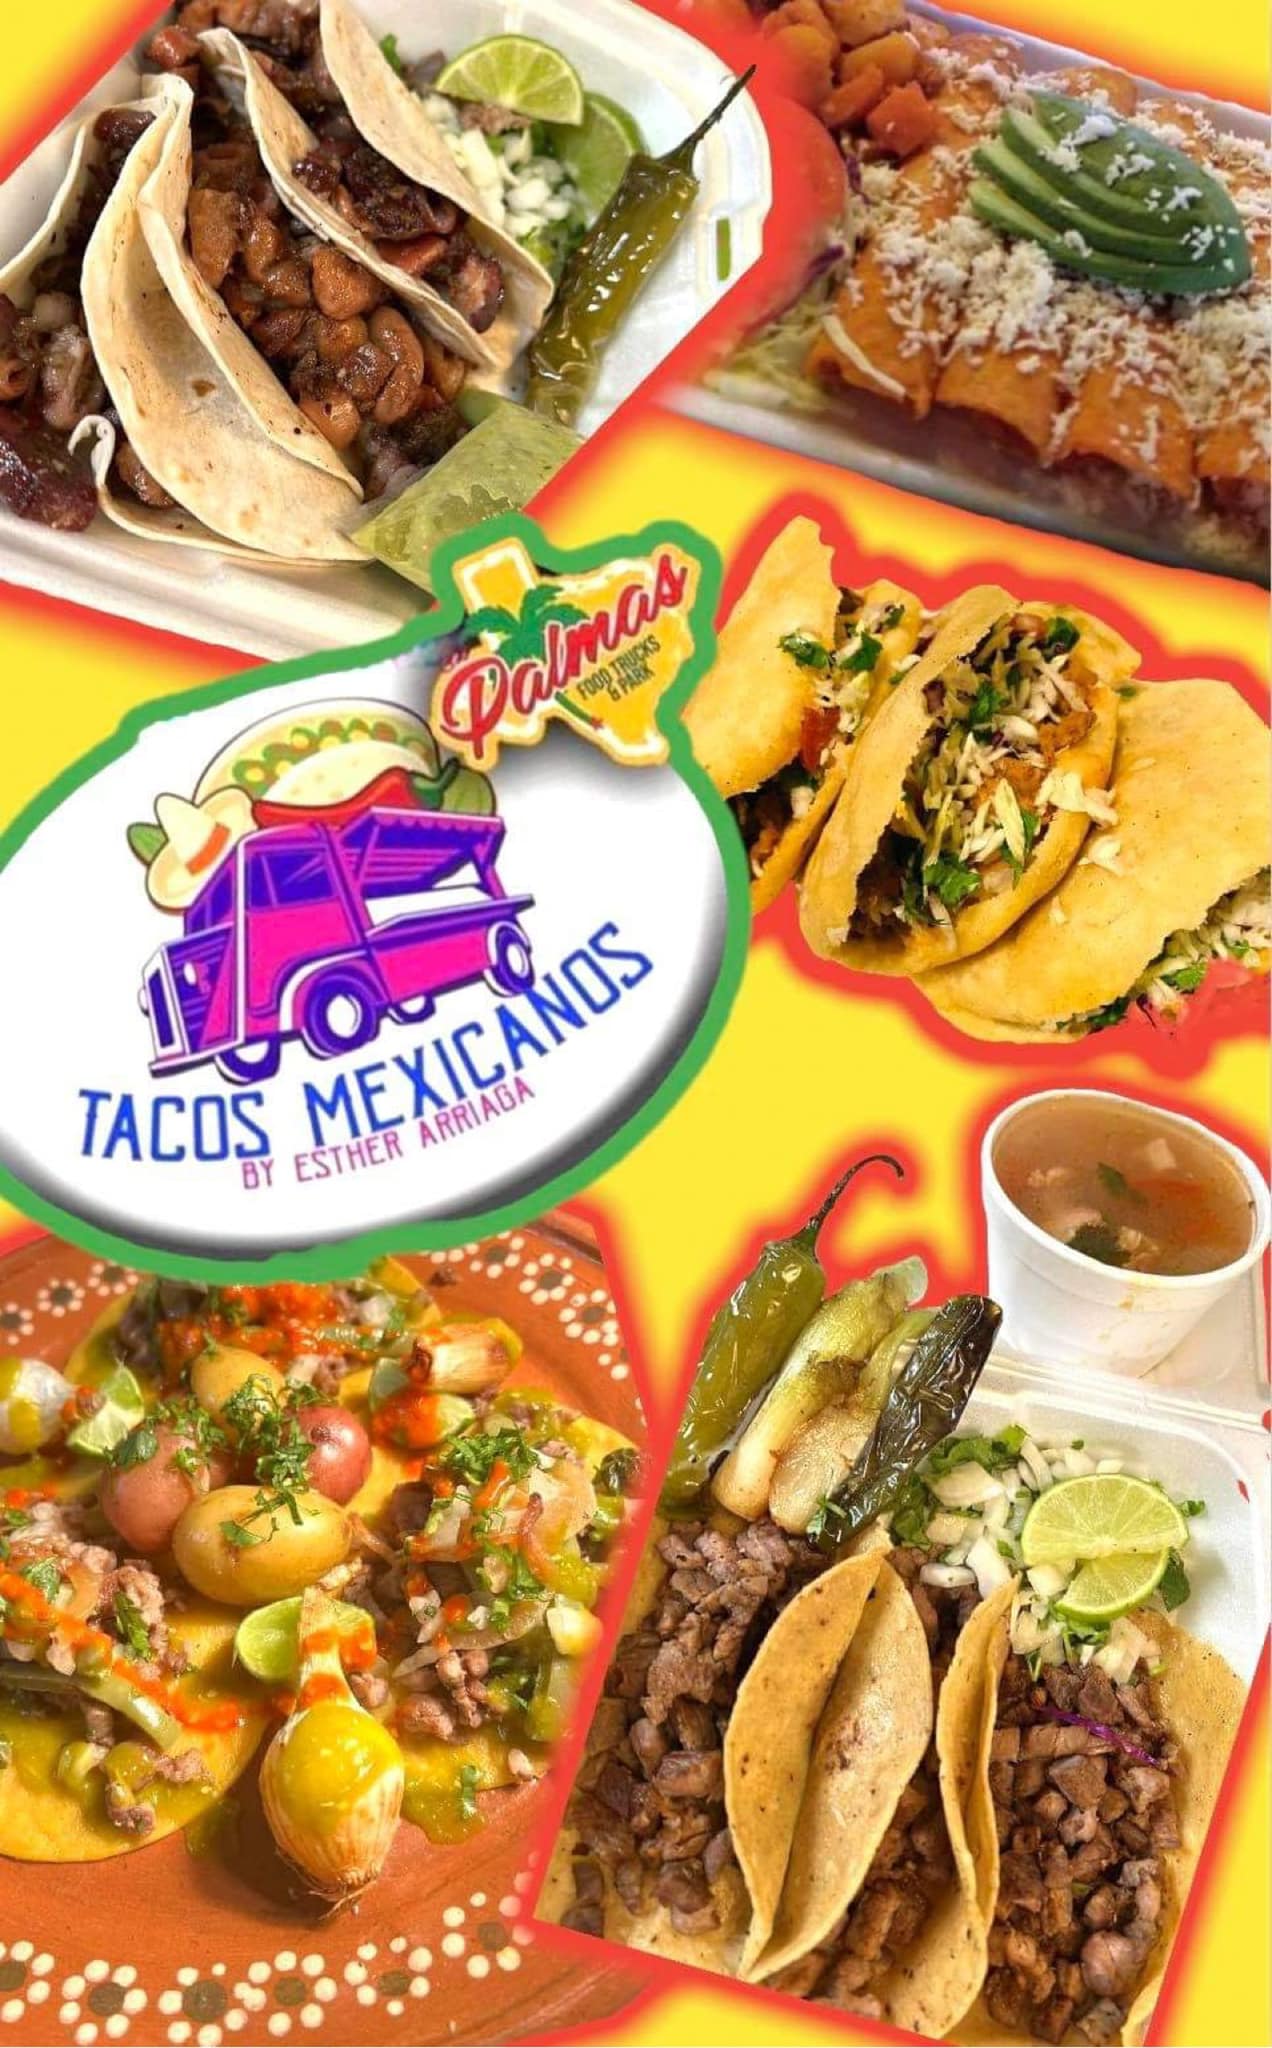 Tacos Mexicanos Food Truck